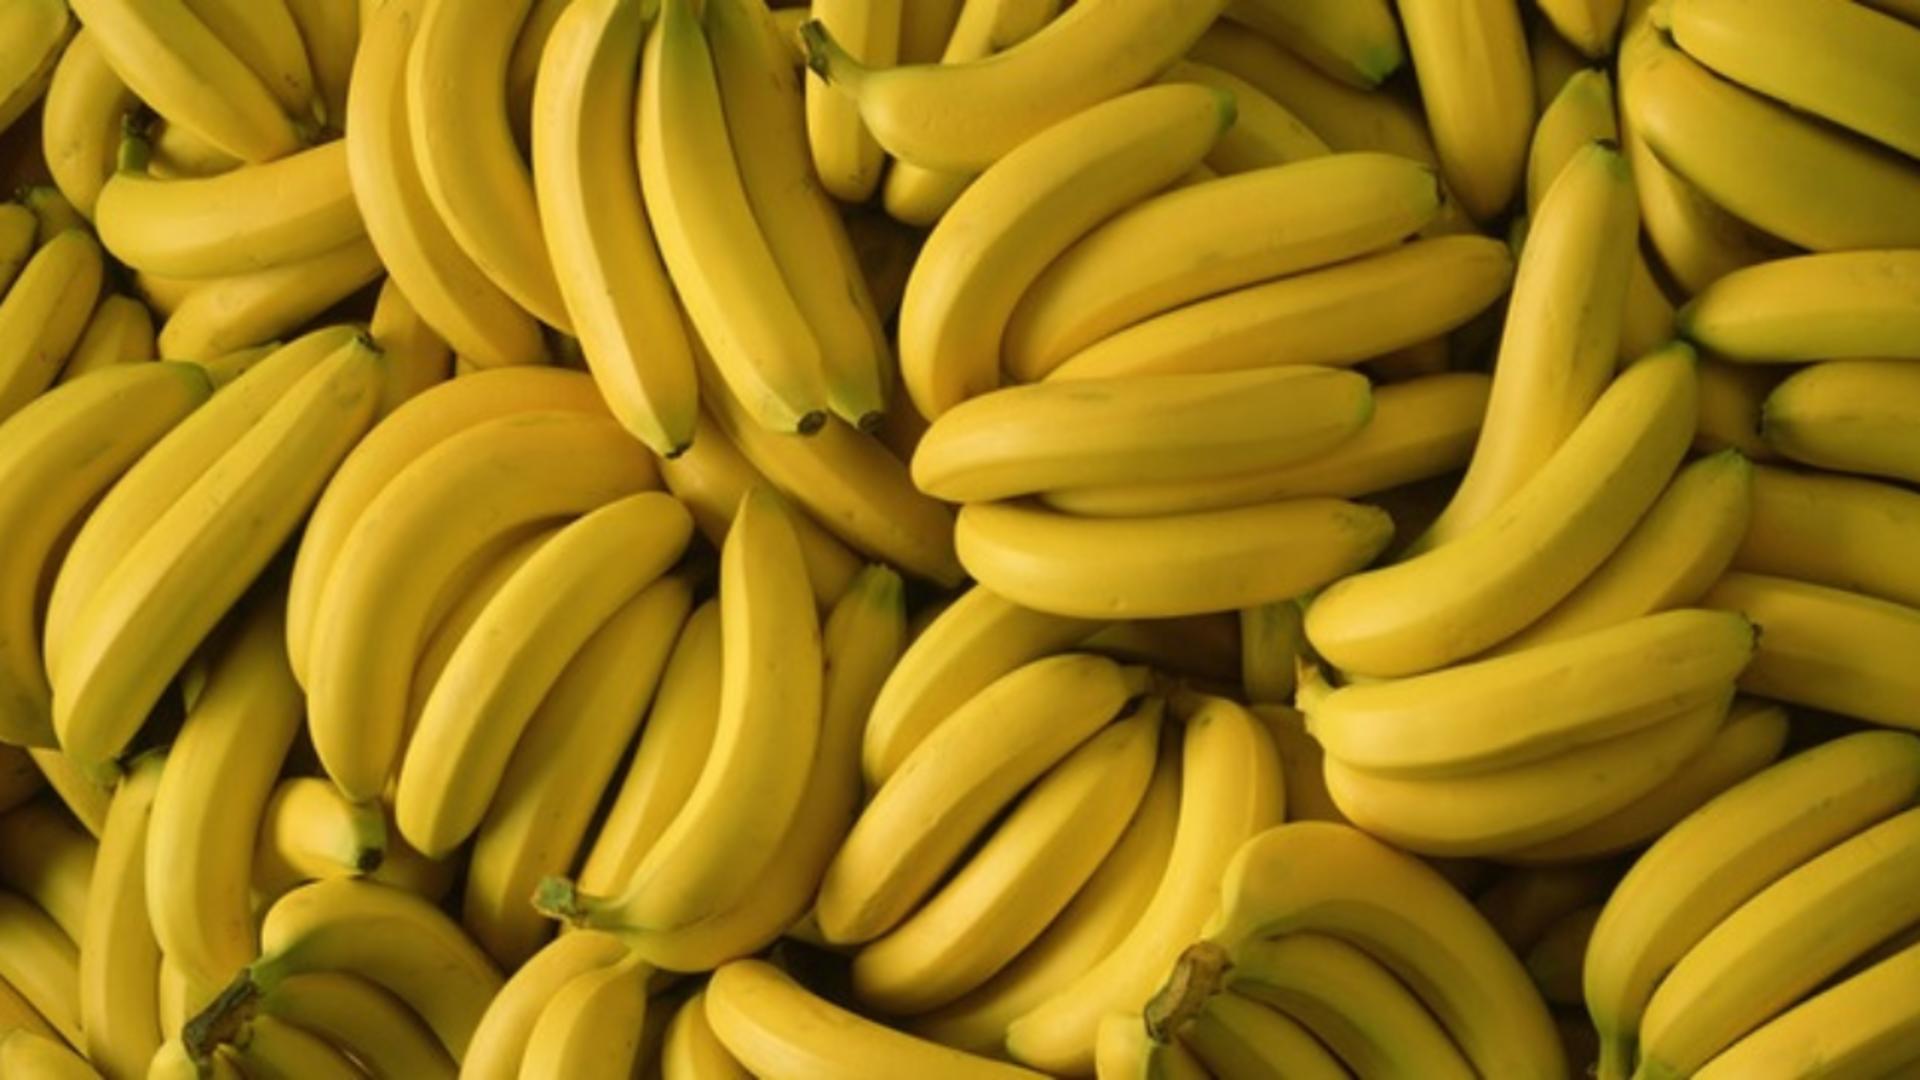 Descoperire înfiorătoare în coaja unei banane din supermarket: cuib cu sute de păianjeni!